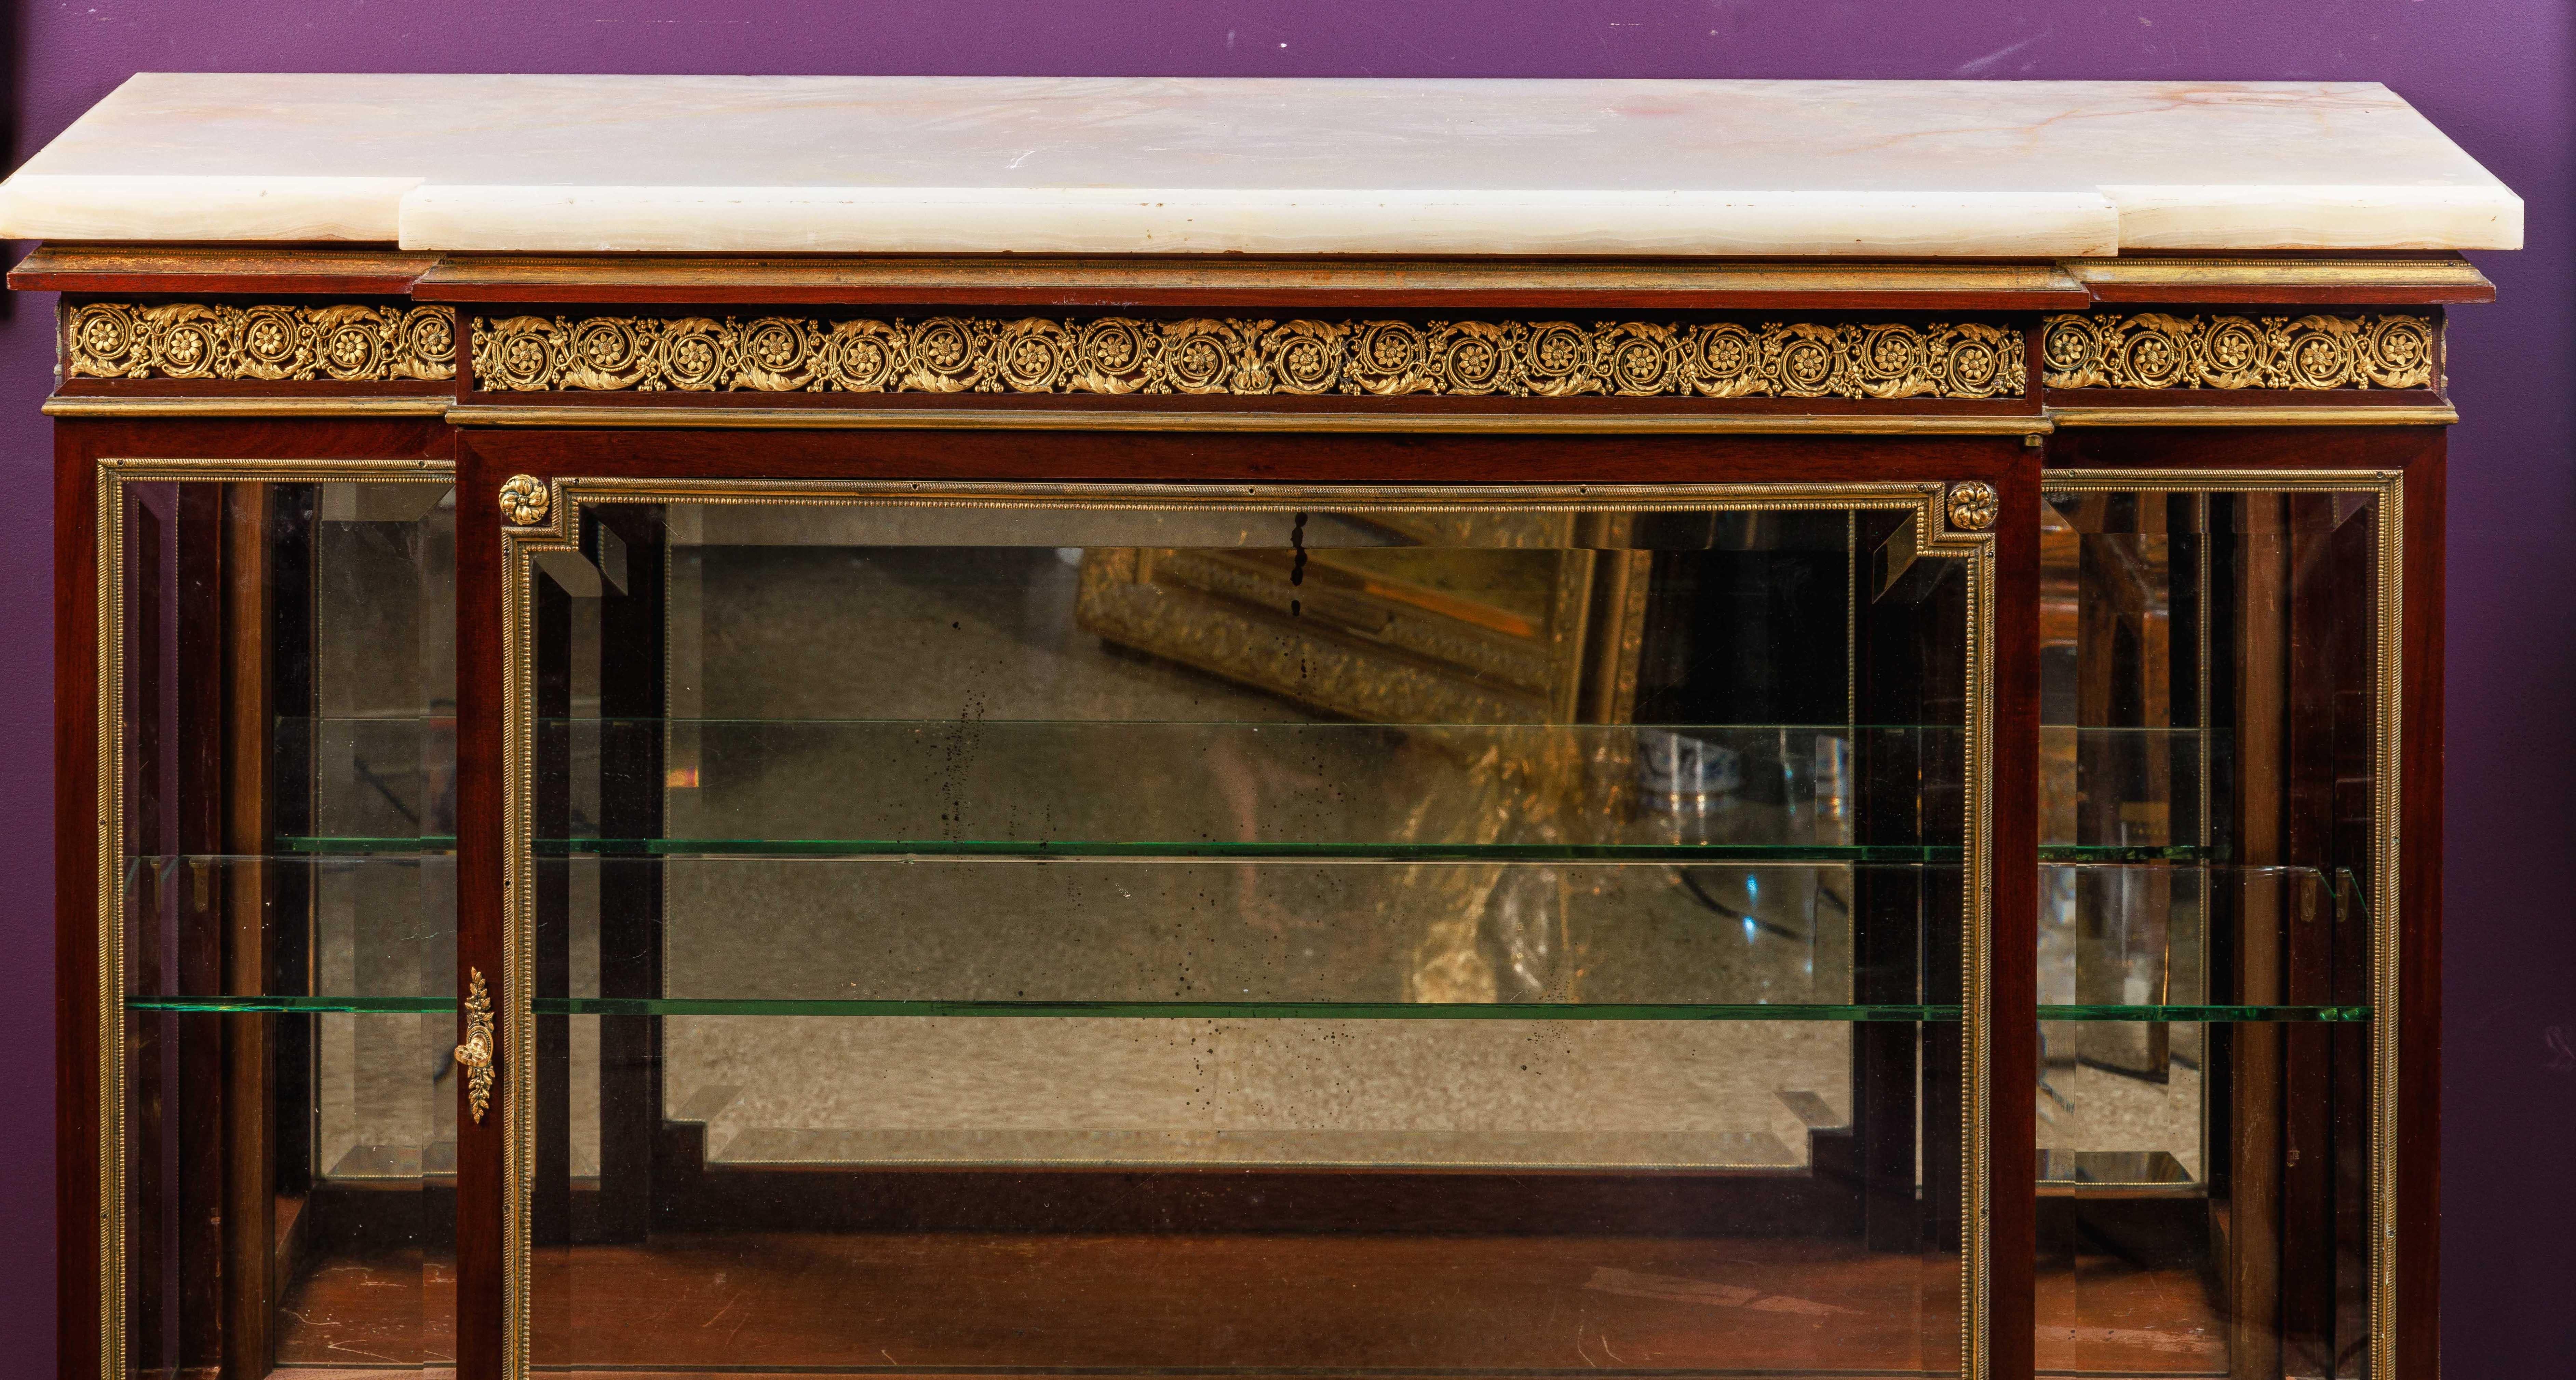 Un exquis meuble commode vitrine de qualité française monté en Ormolu, C. 1880, attribué à Paul Sormani.

Une très élégante vitrine / commode avec d'exquises montures en bronze doré de qualité supérieure et un plateau en onyx, dans le goût et le